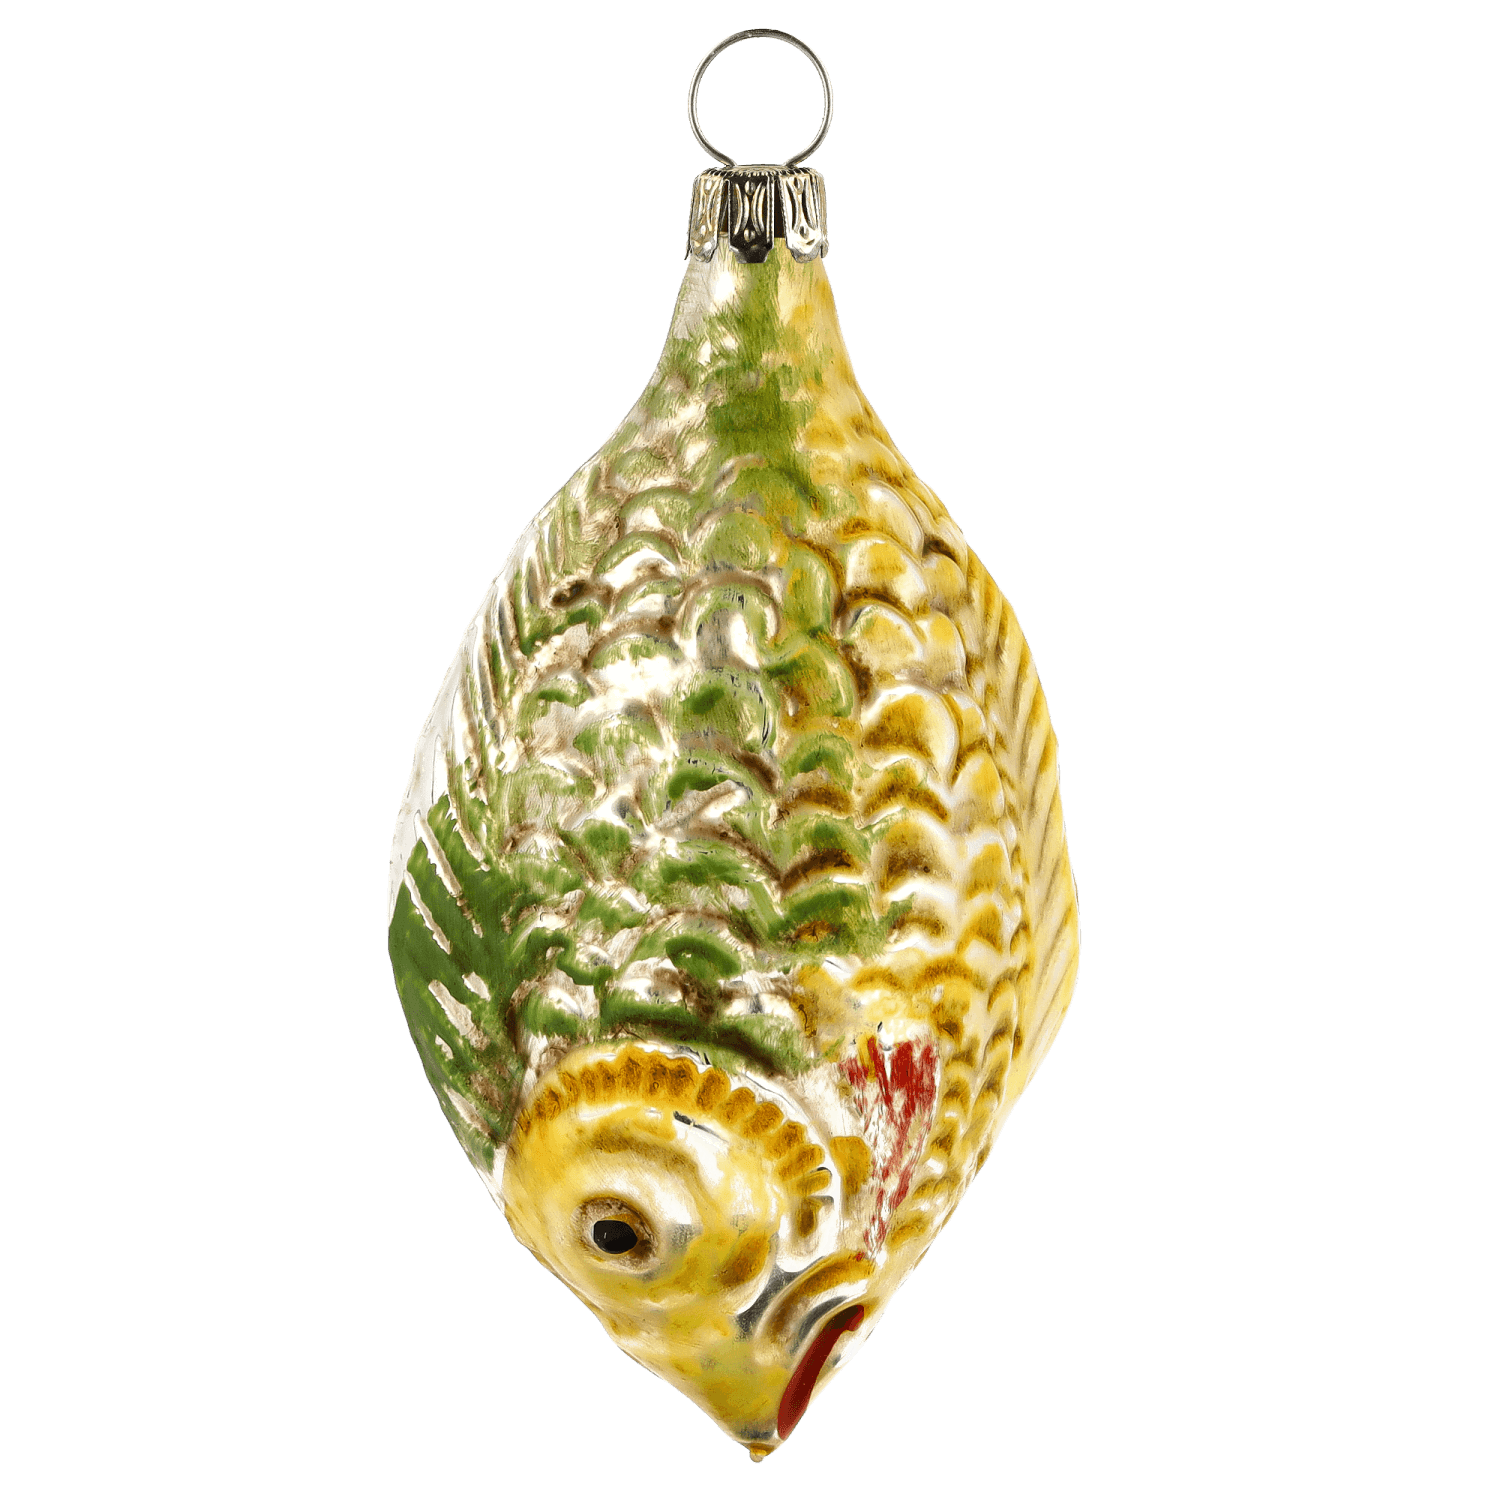 MAROLIN® - Glass ornament "Big fish"